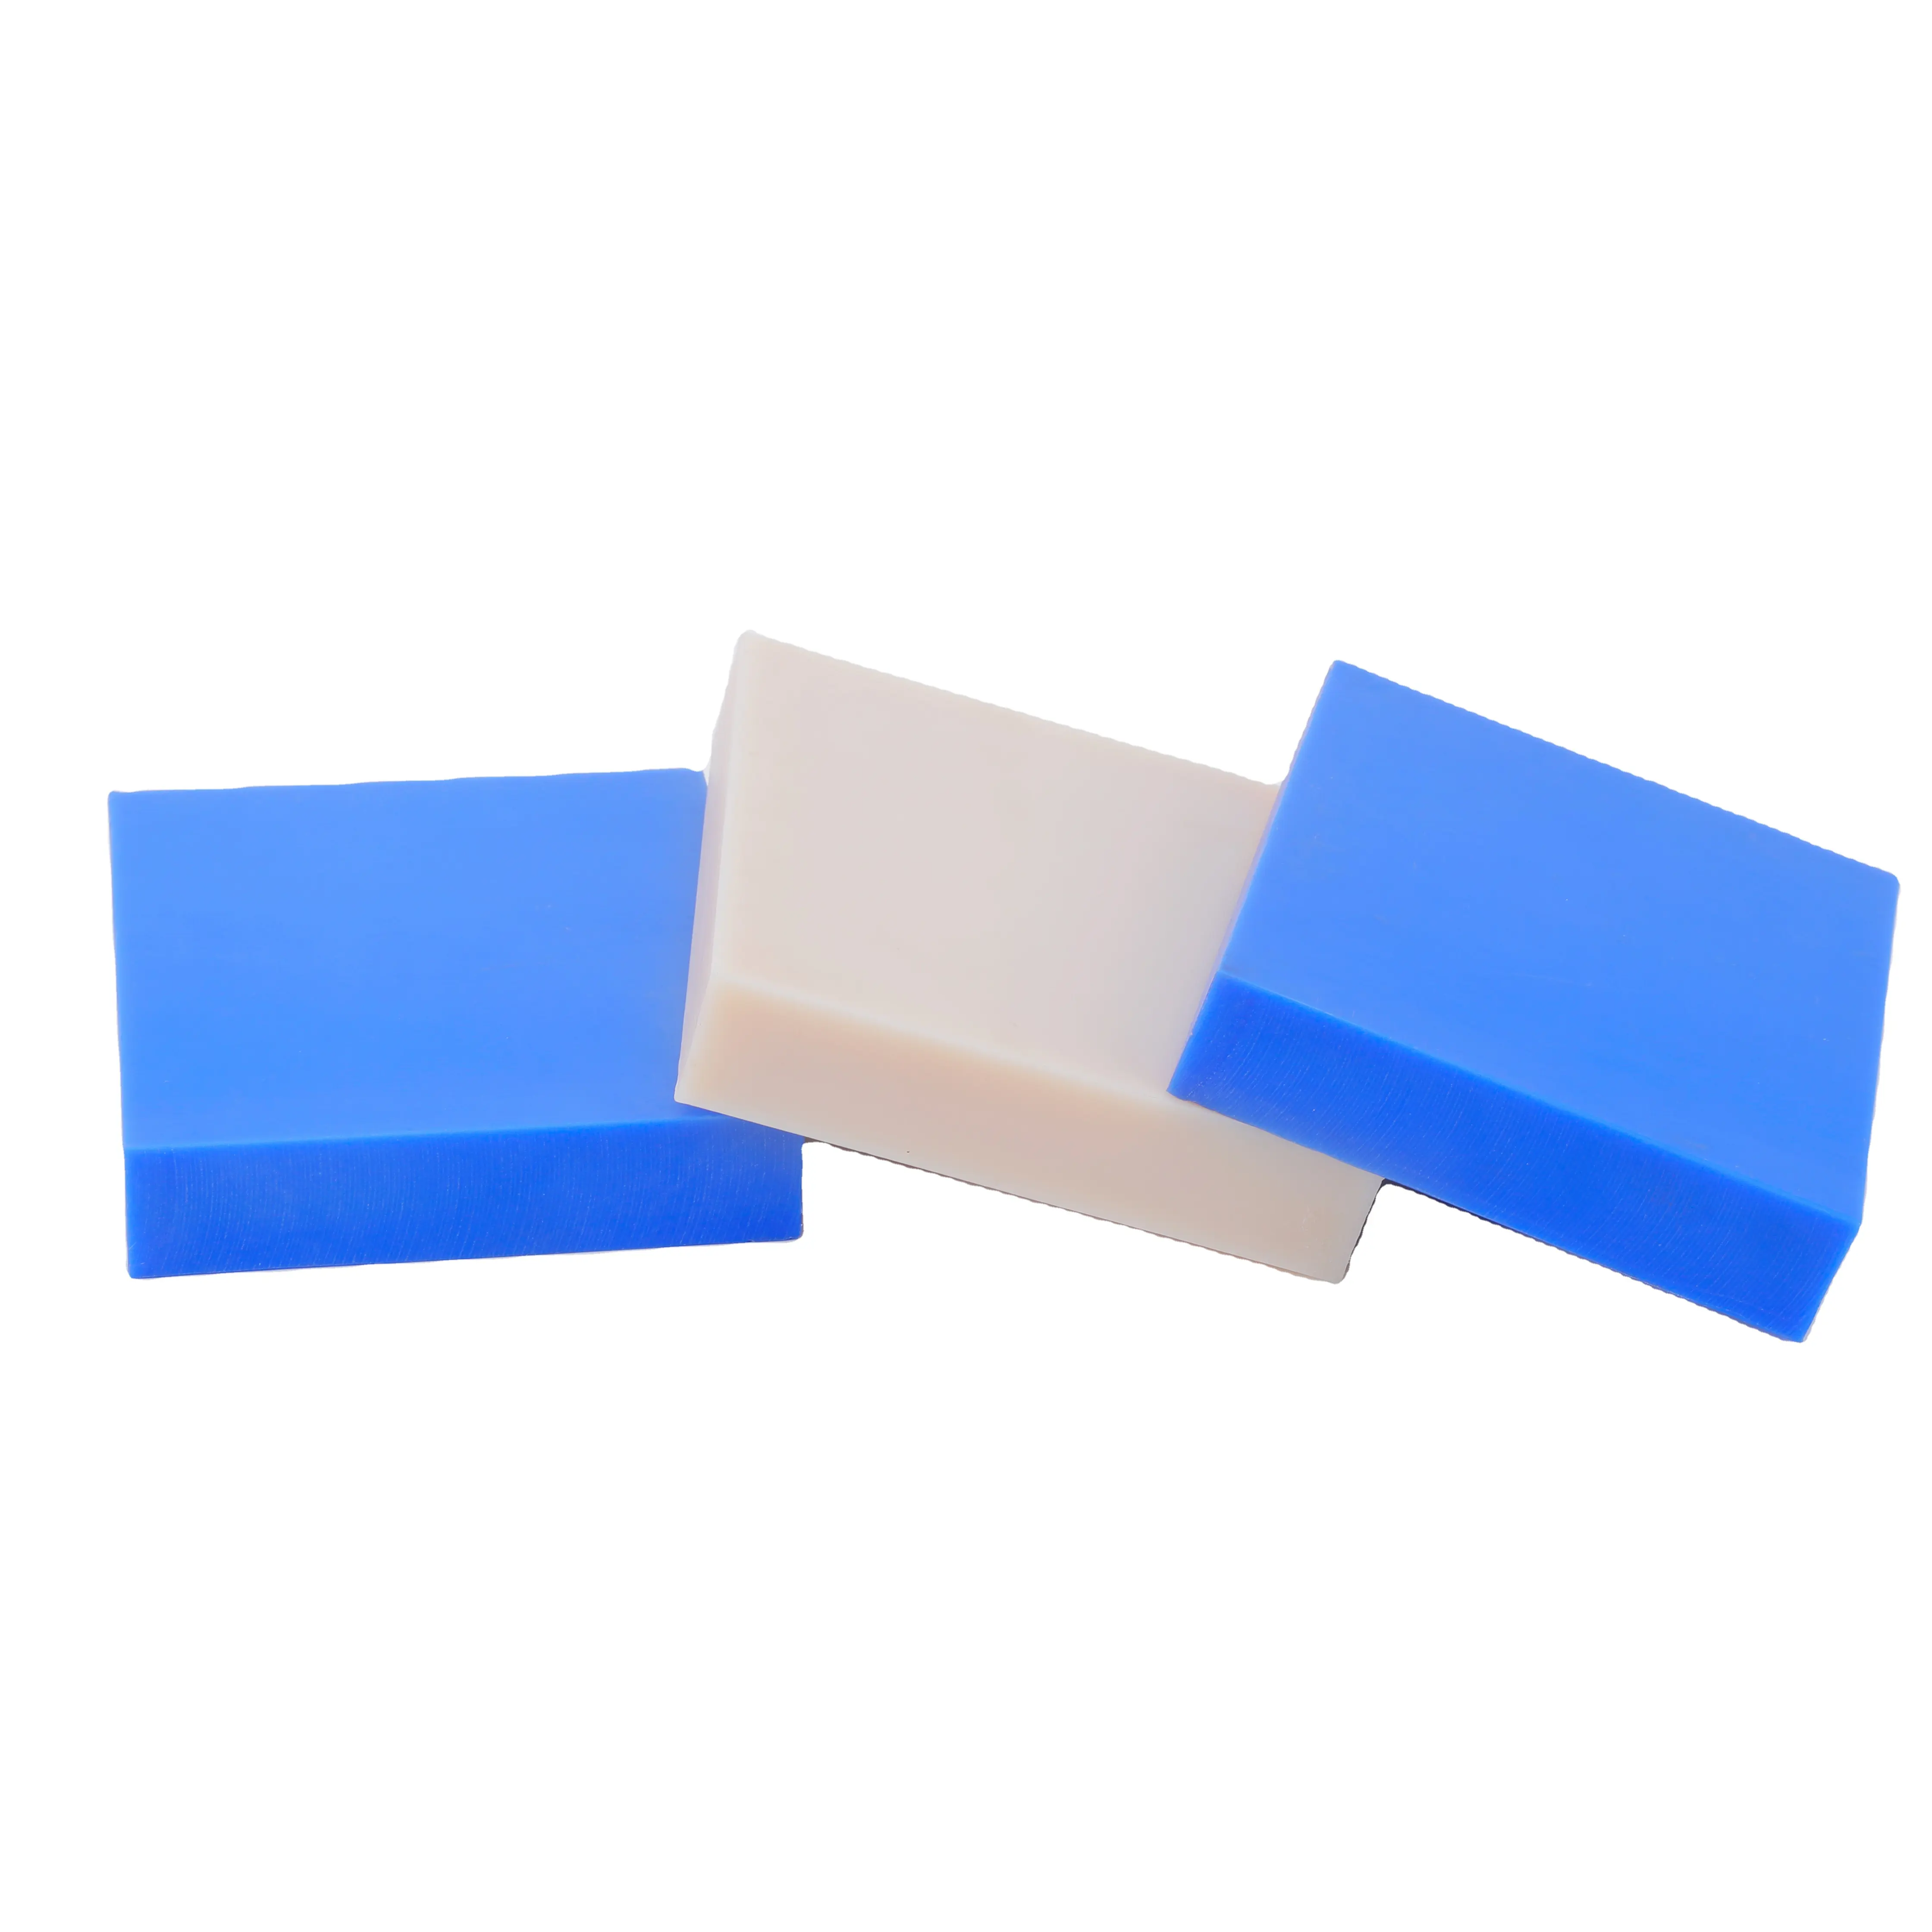 고품질 폴리에틸렌 보드/ABS/MC 하드 플라스틱 나일론 보드 플레이트 커팅 부품, 불규칙한 플라스틱 부품